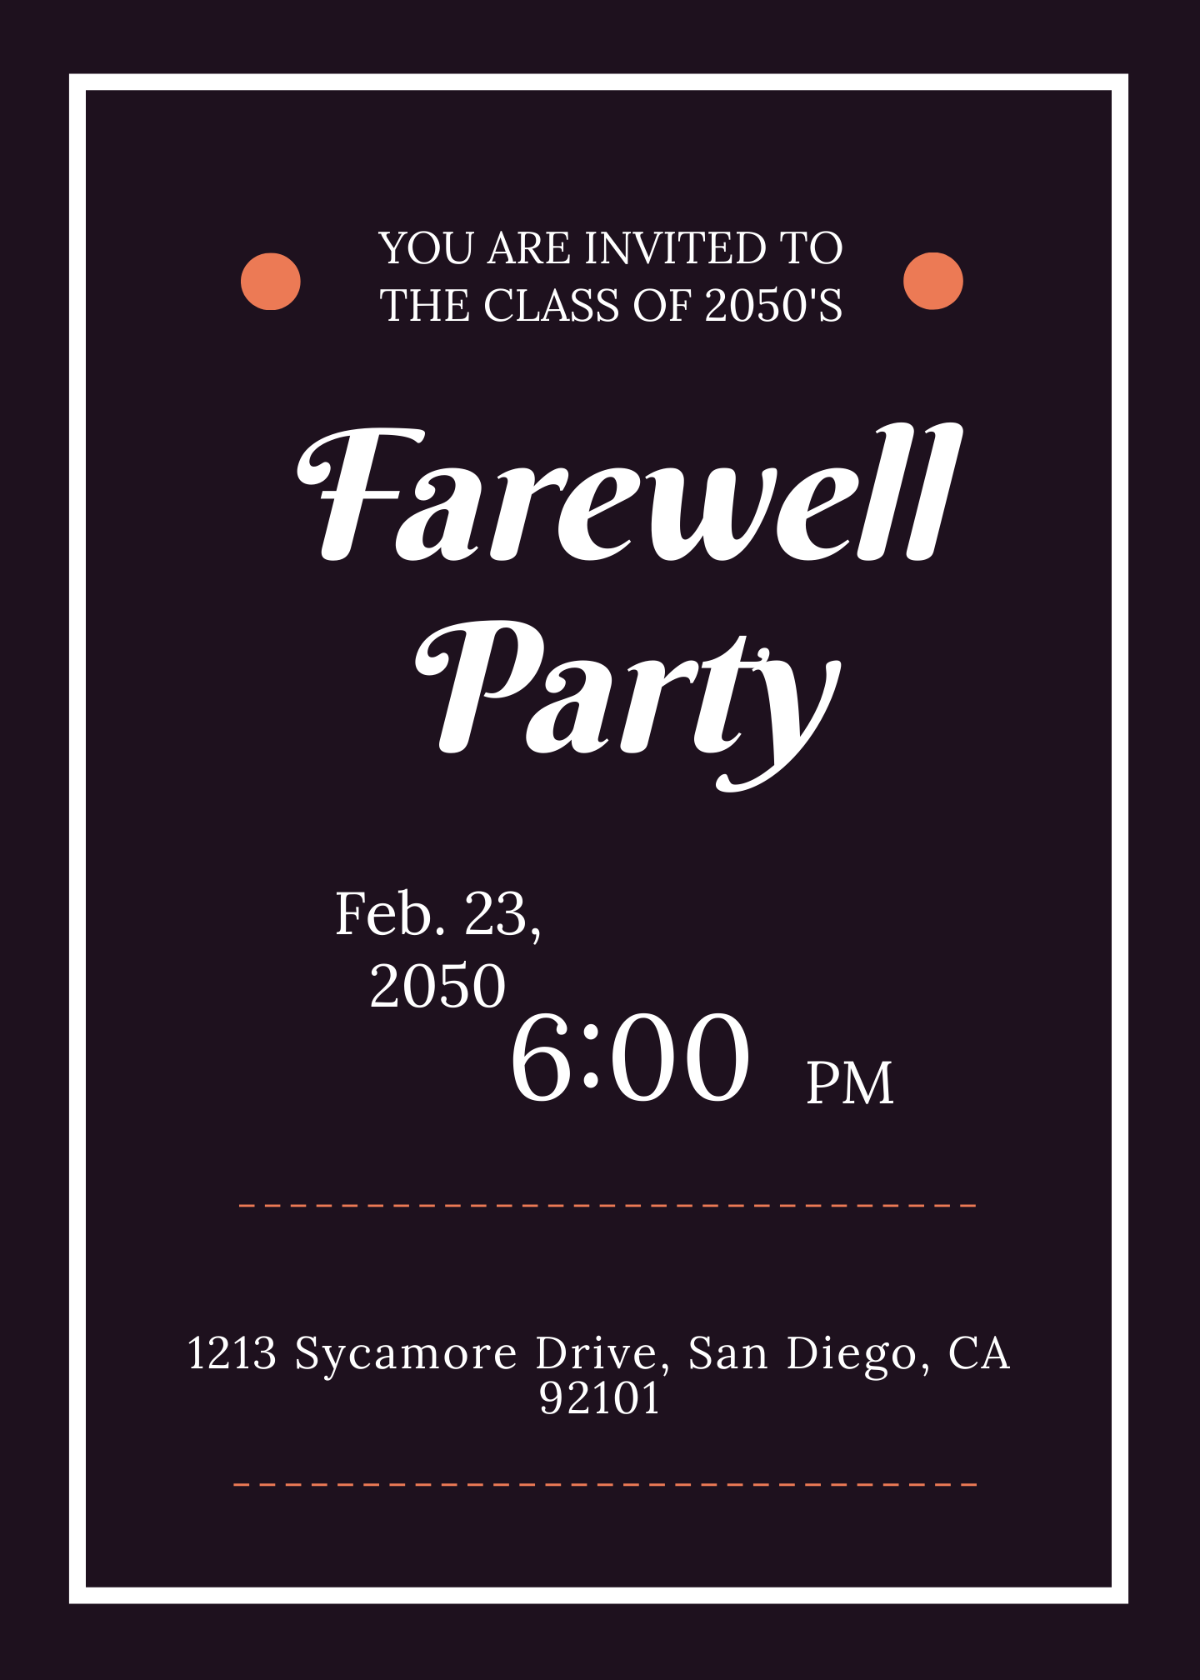 School Farewell Party Invitation